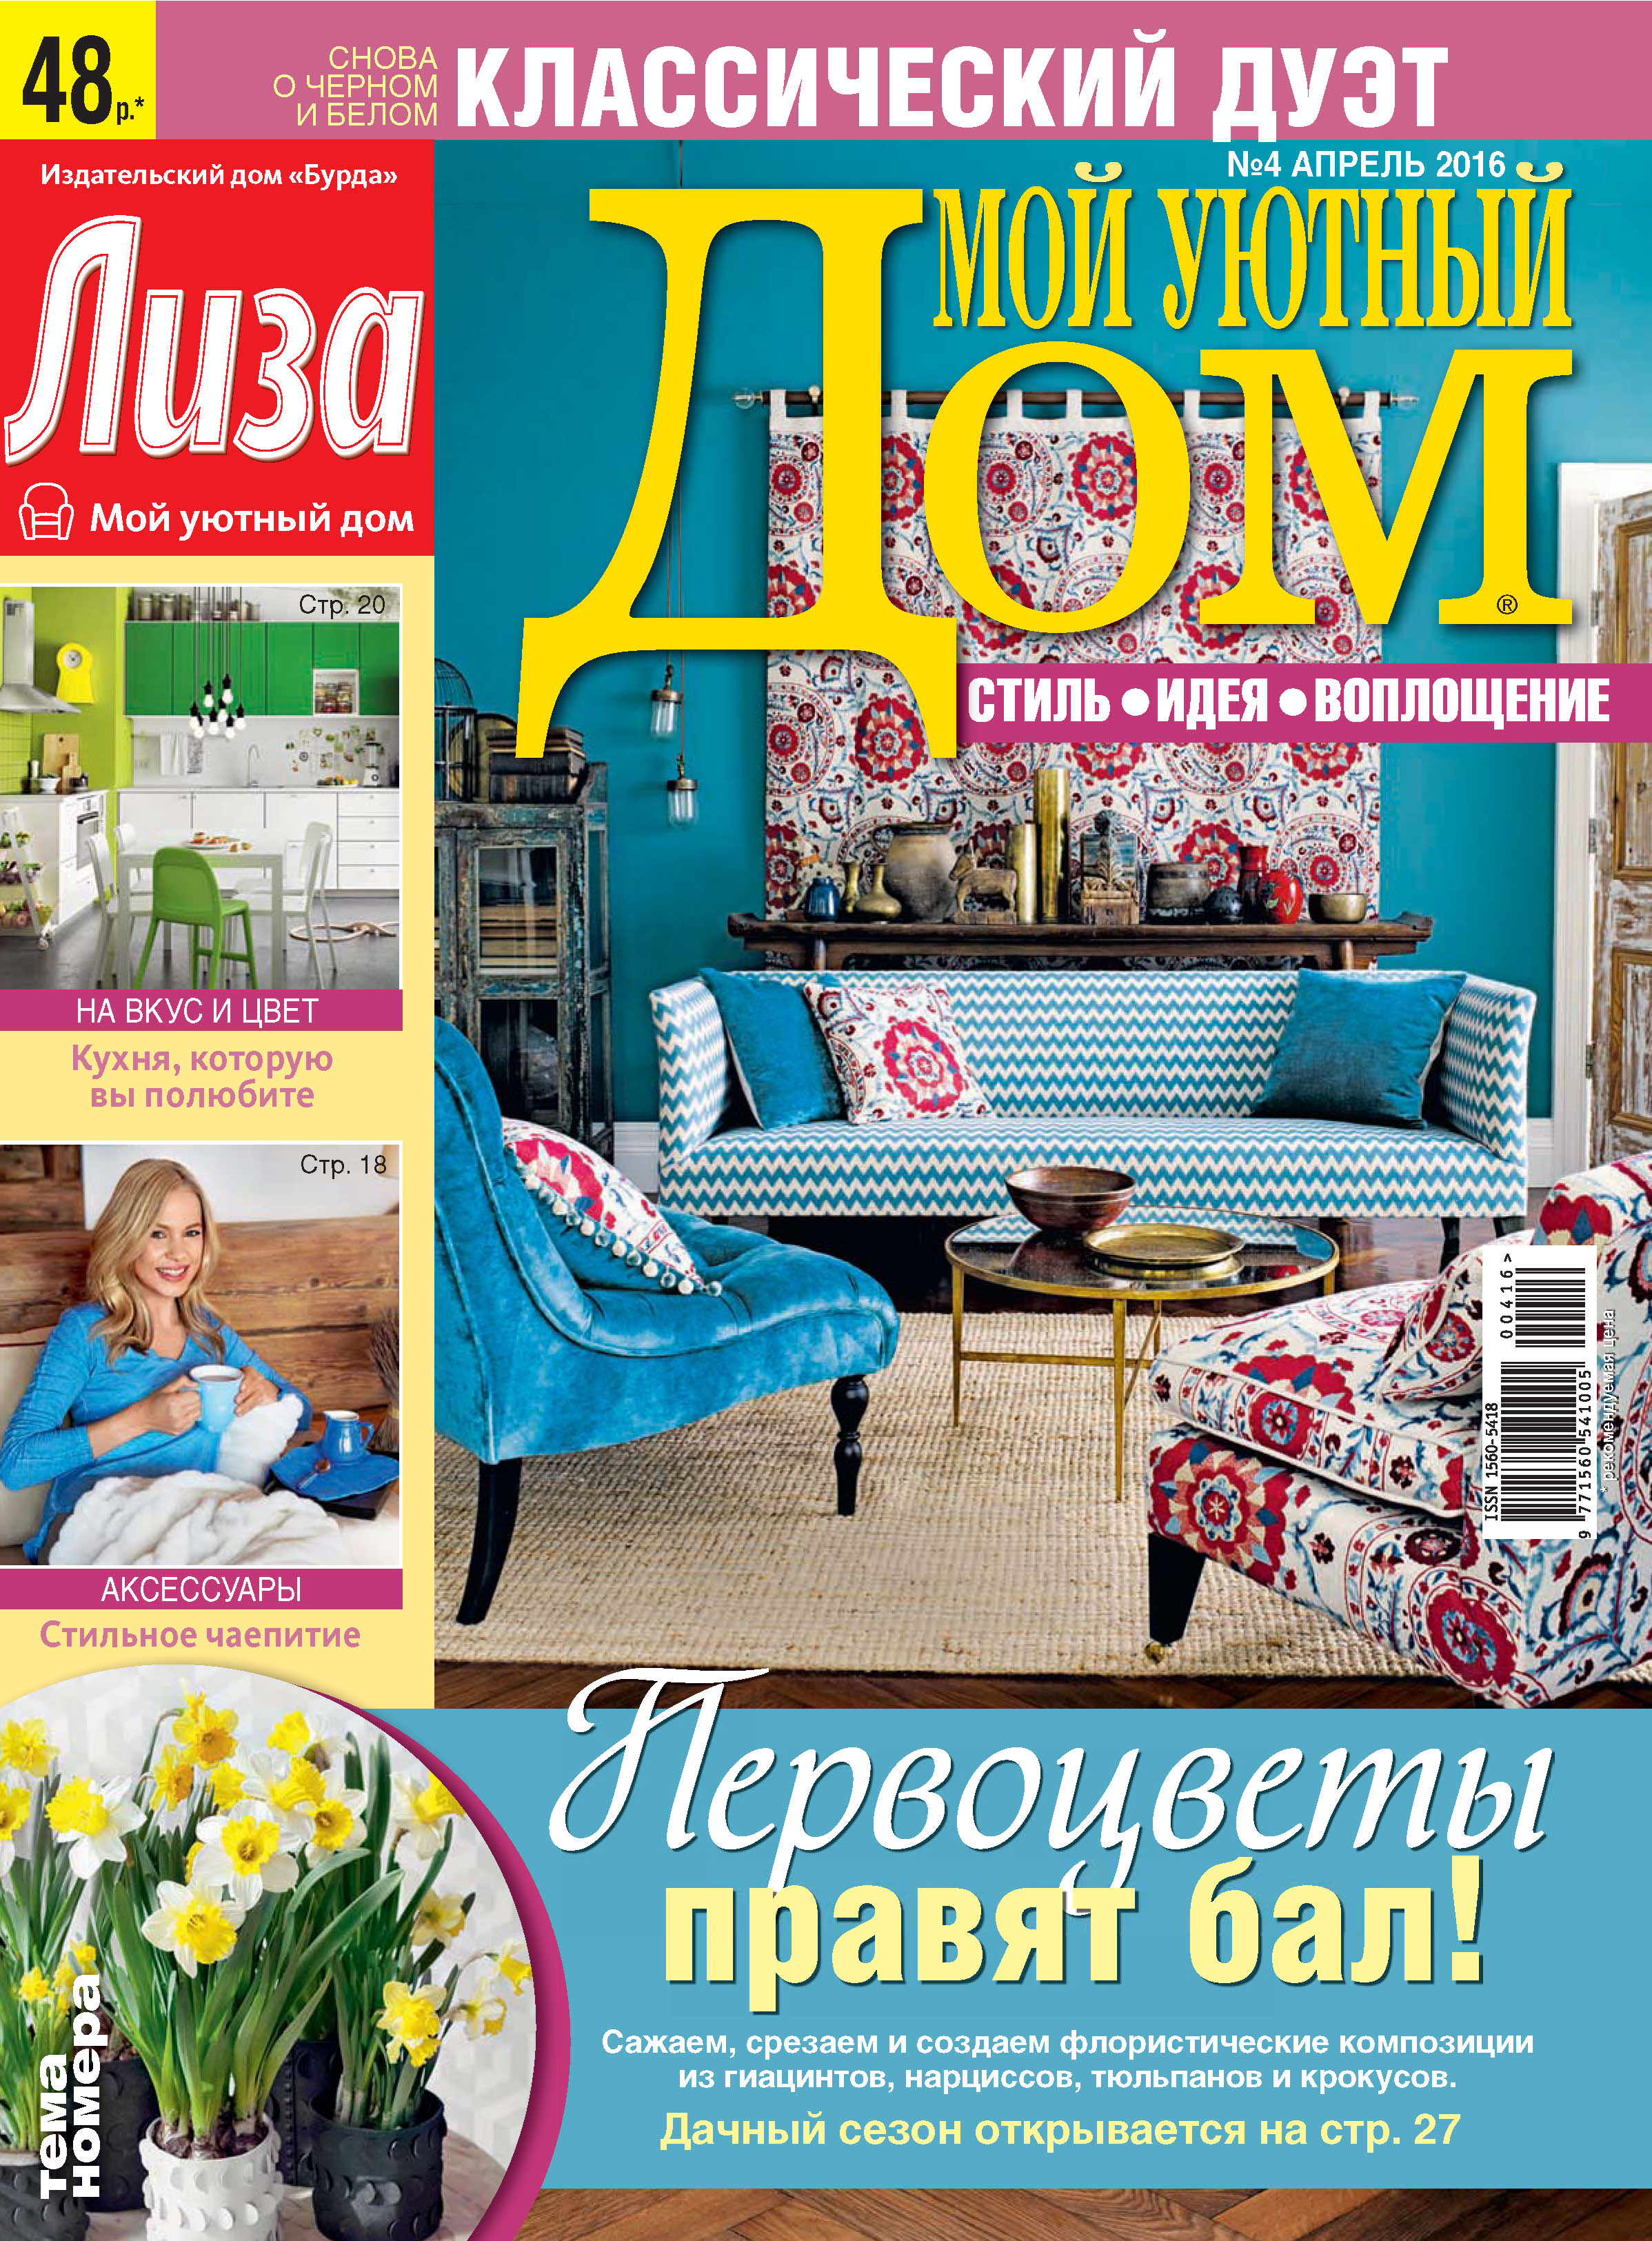 Домашний 10 апреля. Мой уютный дом журнал. Журналы о доме и уюте. Обложка журнала уютный дом.